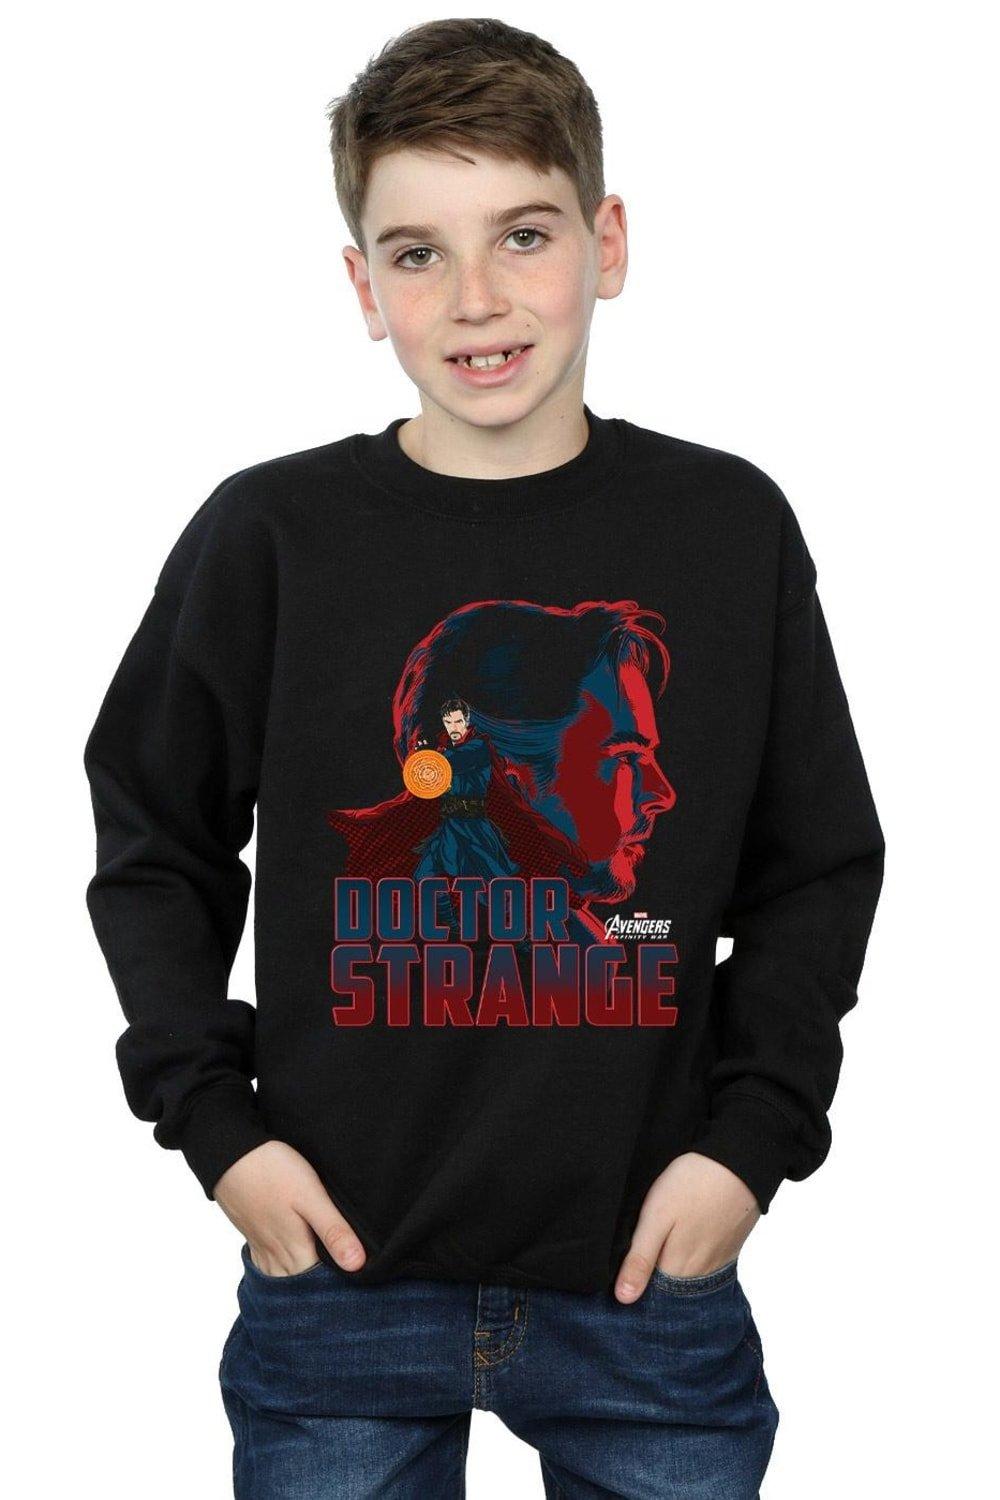 Avengers Infinity War Doctor Strange Character Sweatshirt